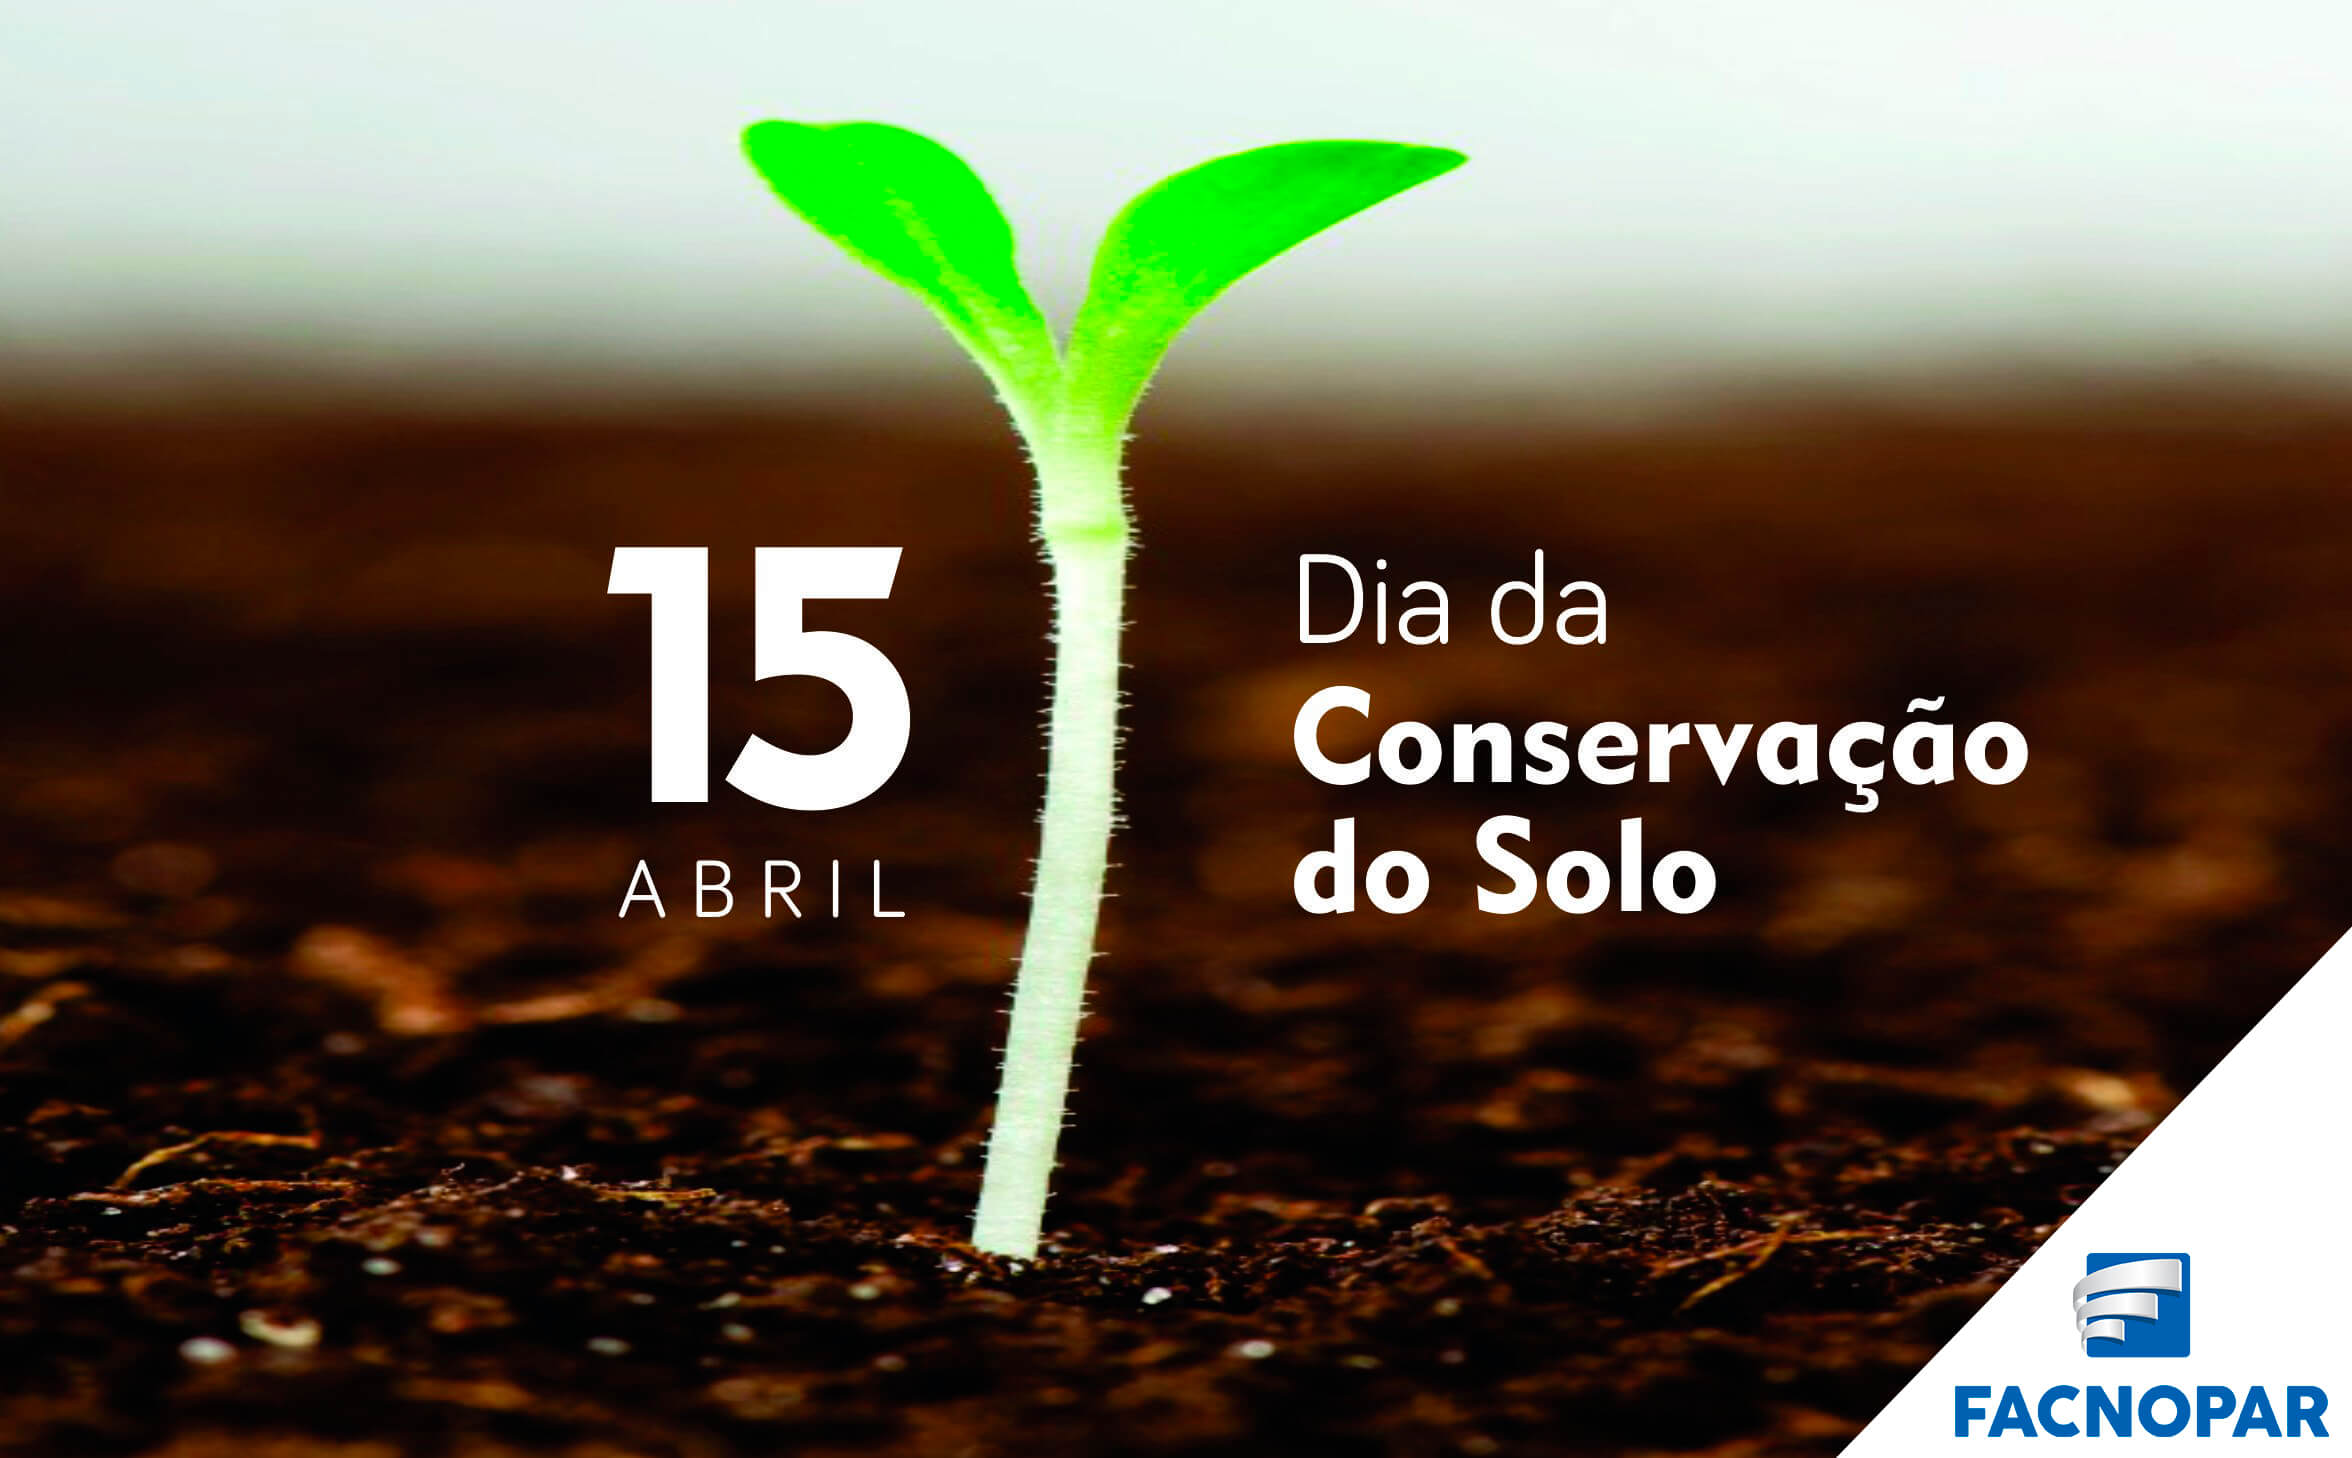 Dia Nacional da Conservação do Solo